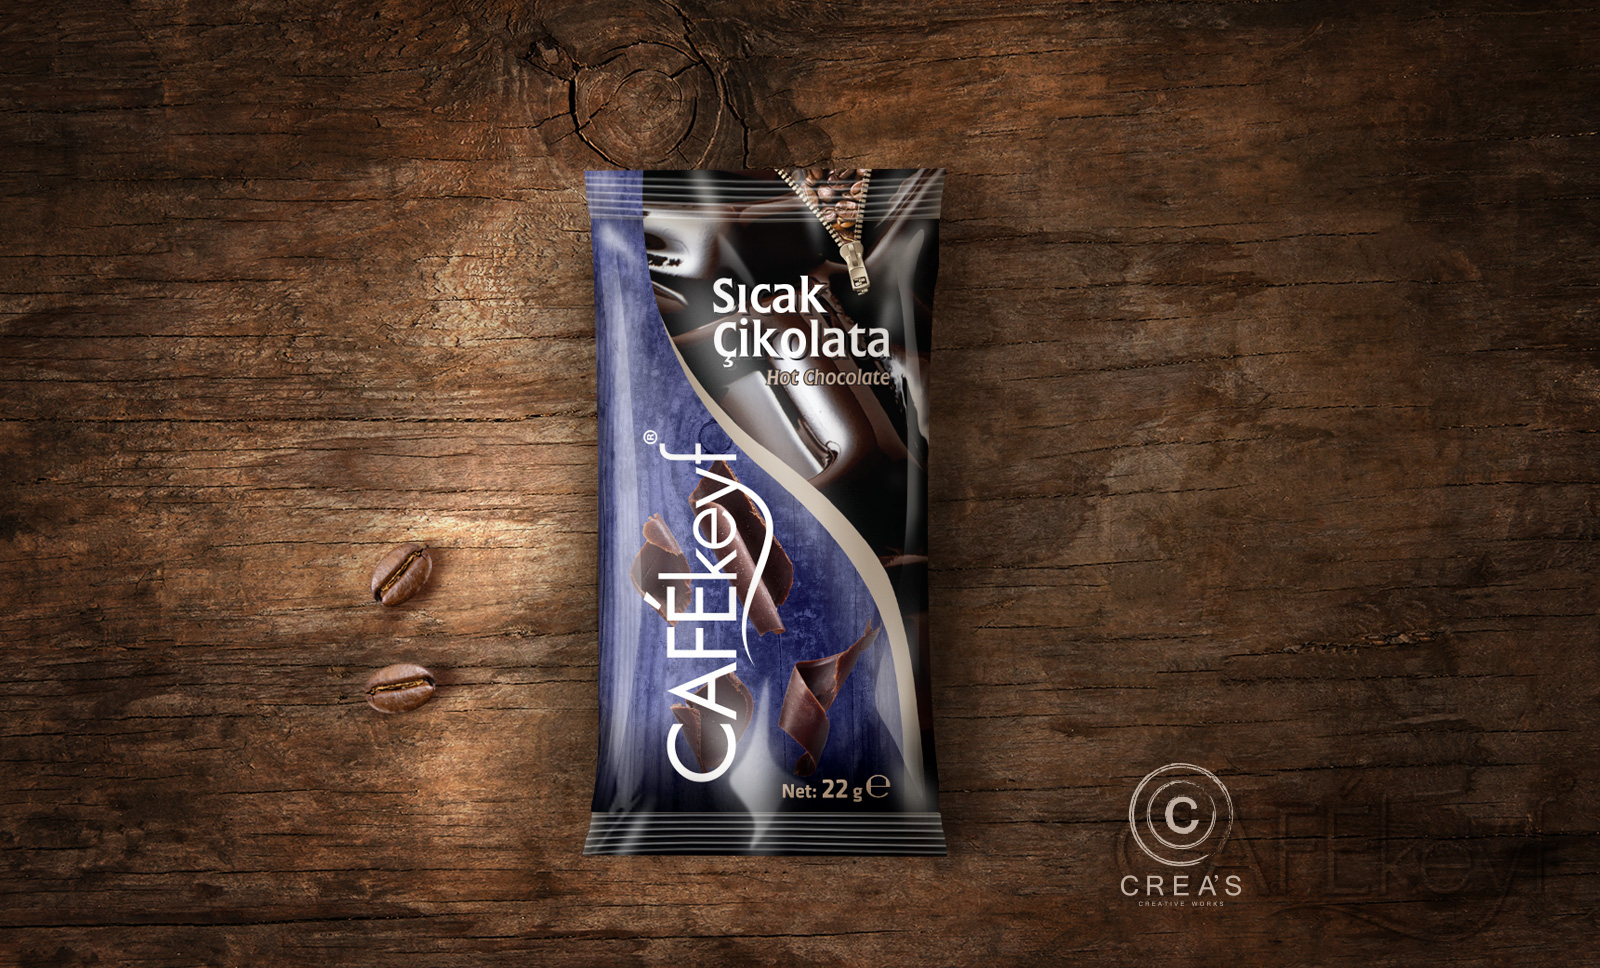 Creas Creative Tasarım ve Reklam Ajansı İzmir - Cafekeyf Çikolata Ambalaj Tasarımı